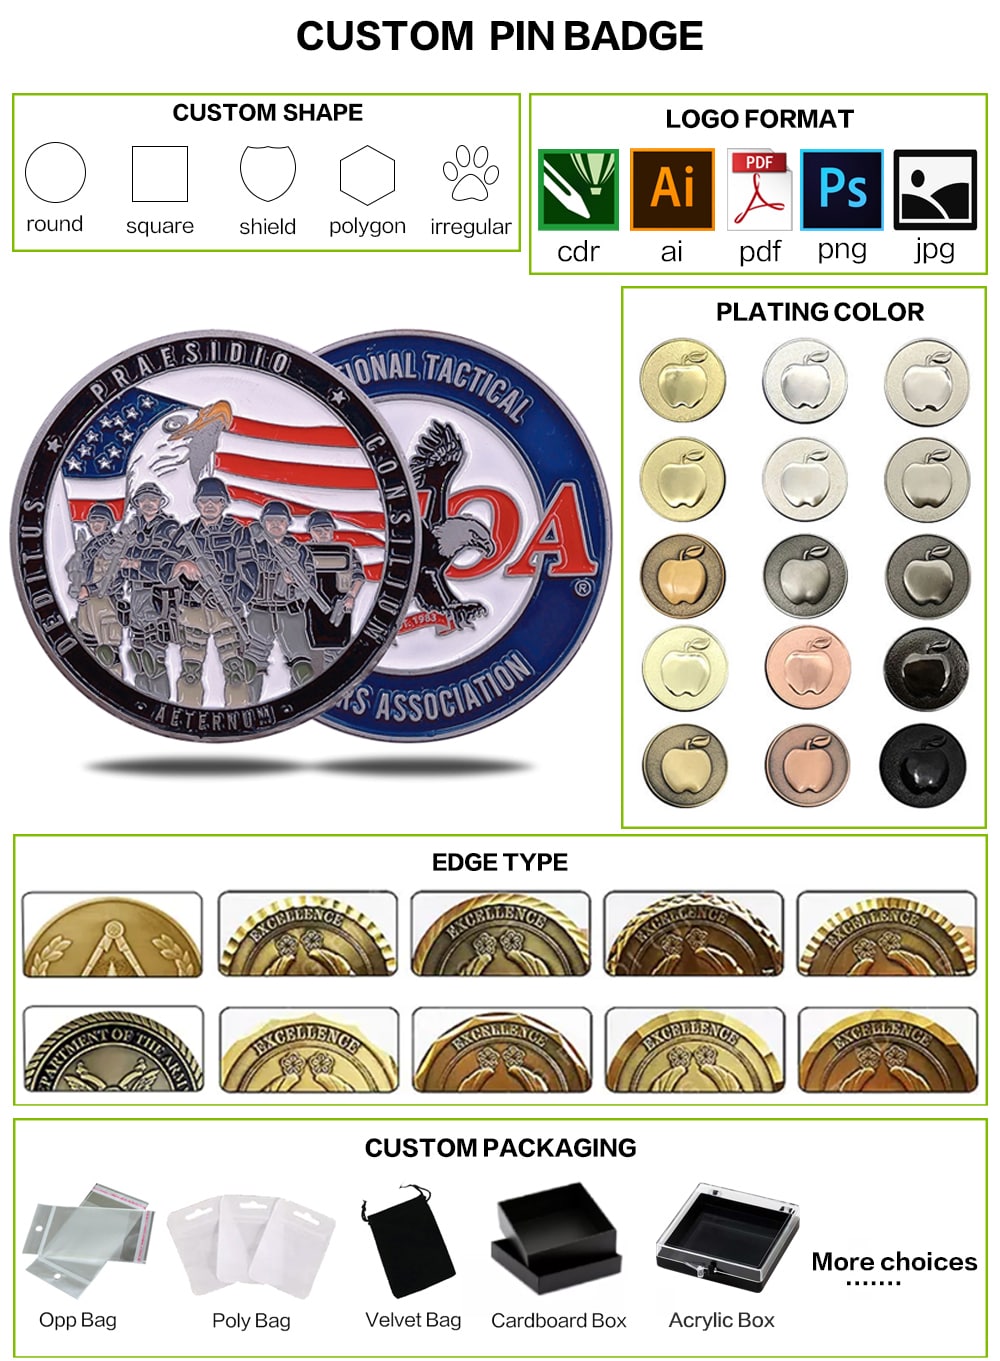 Service commemorative coin